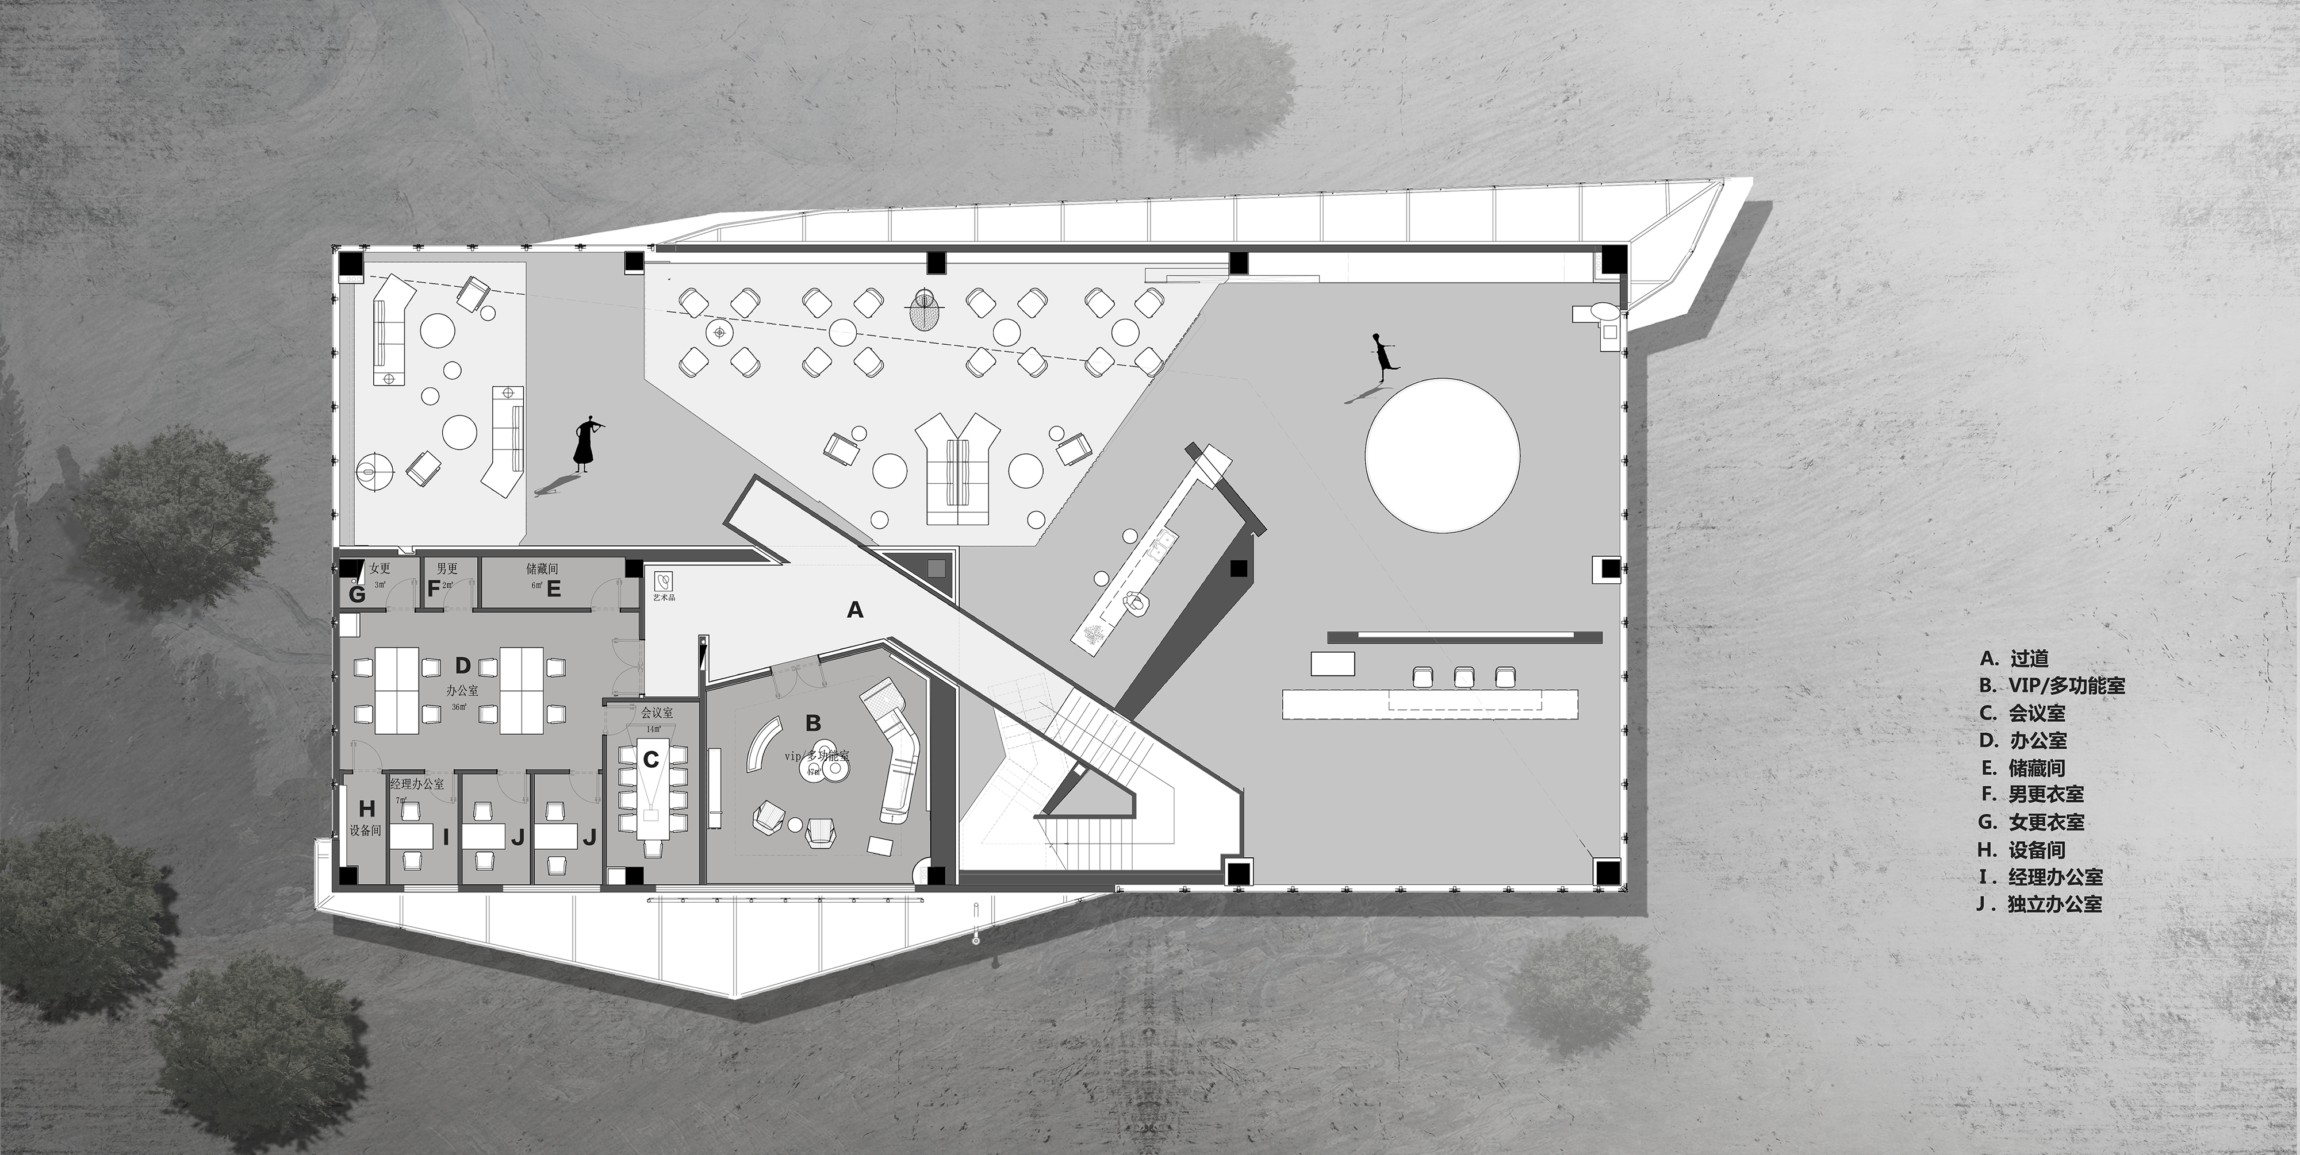 零次方设计 | 金辉地产 · 建筑空间的解构主义美学